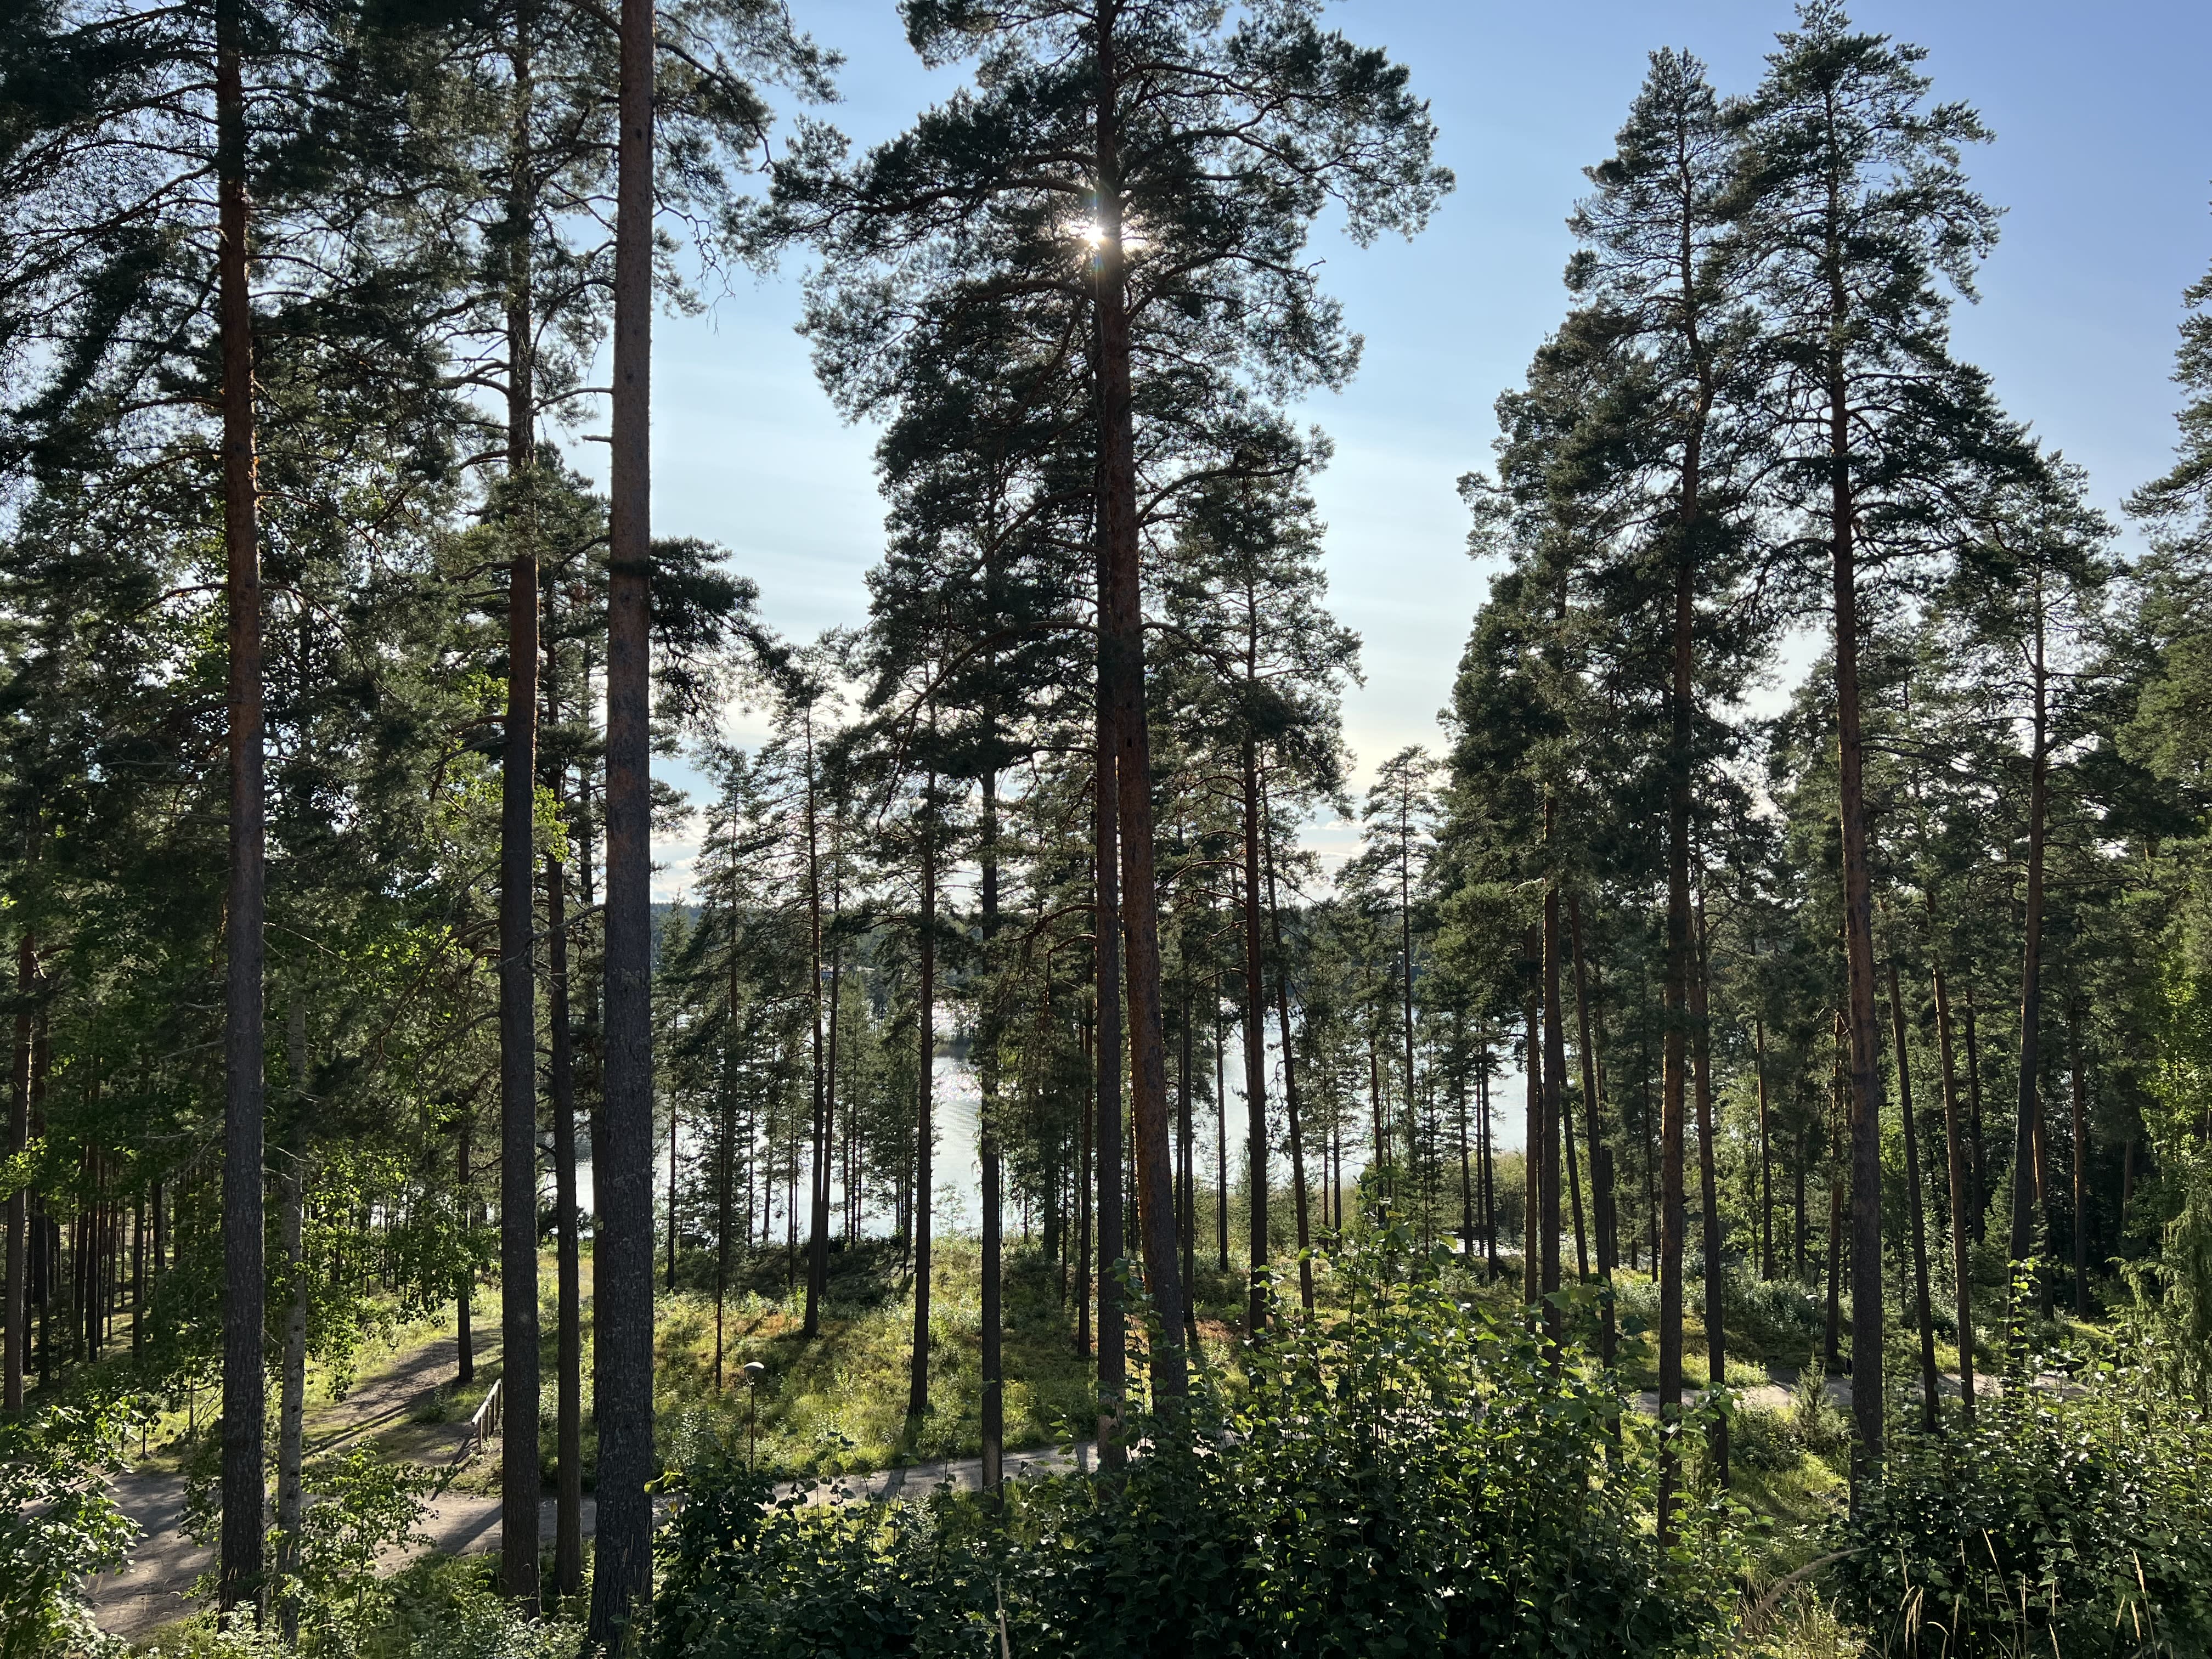 Finnland hat den wärmsten September seit Beginn der Aufzeichnungen